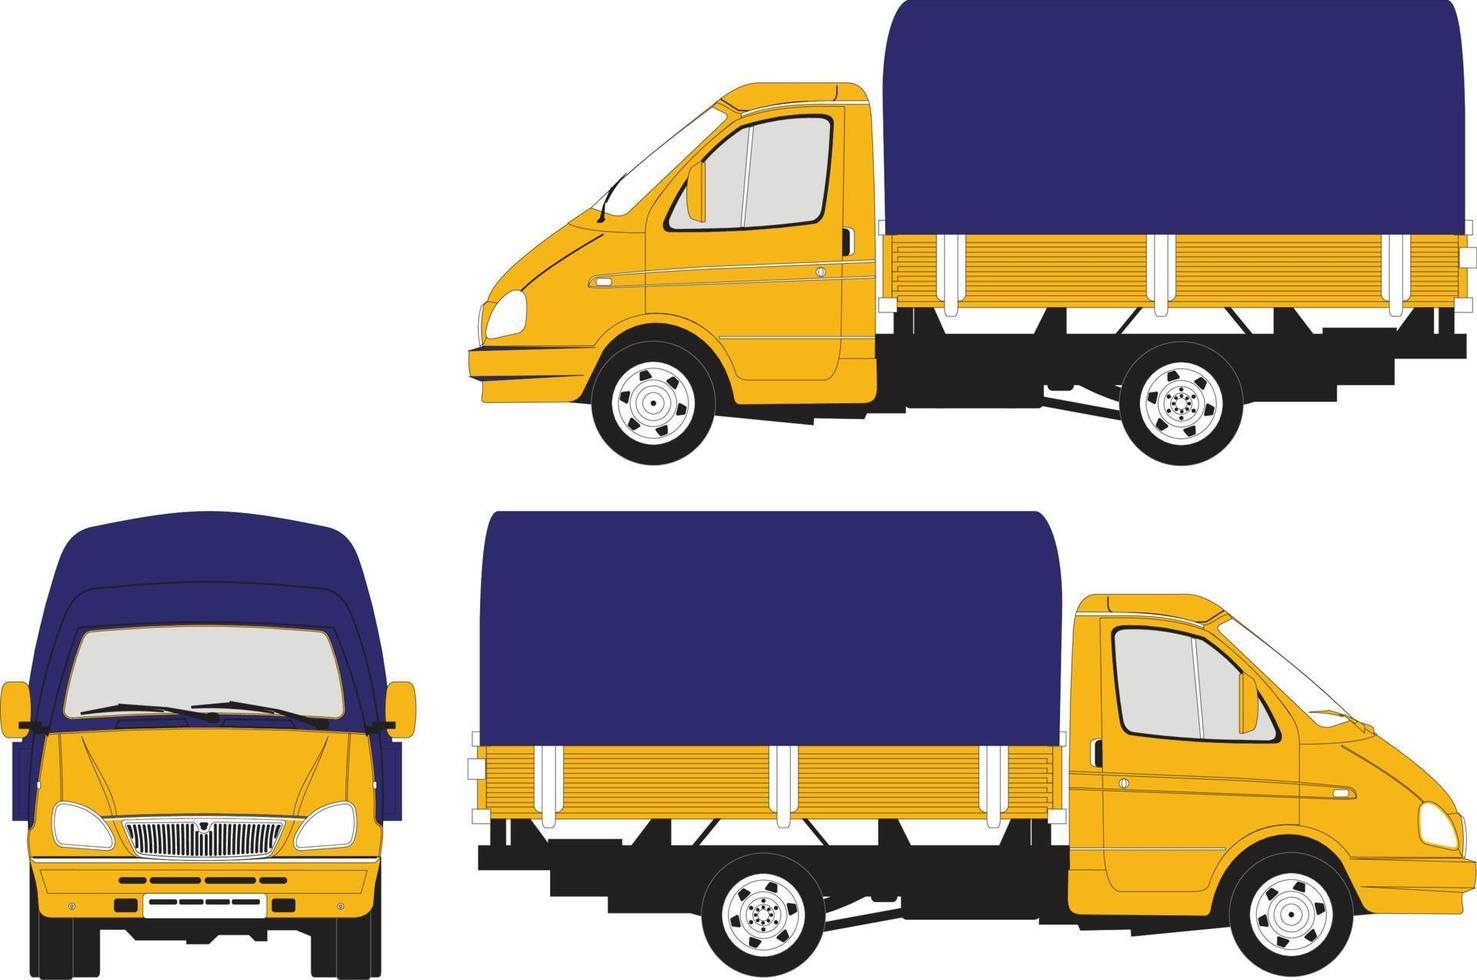 voiture de livraison. véhicule utilitaire jaune isolé sur fond blanc.camion van. illustration vectorielle dans un style plat pour votre entreprise. vecteur